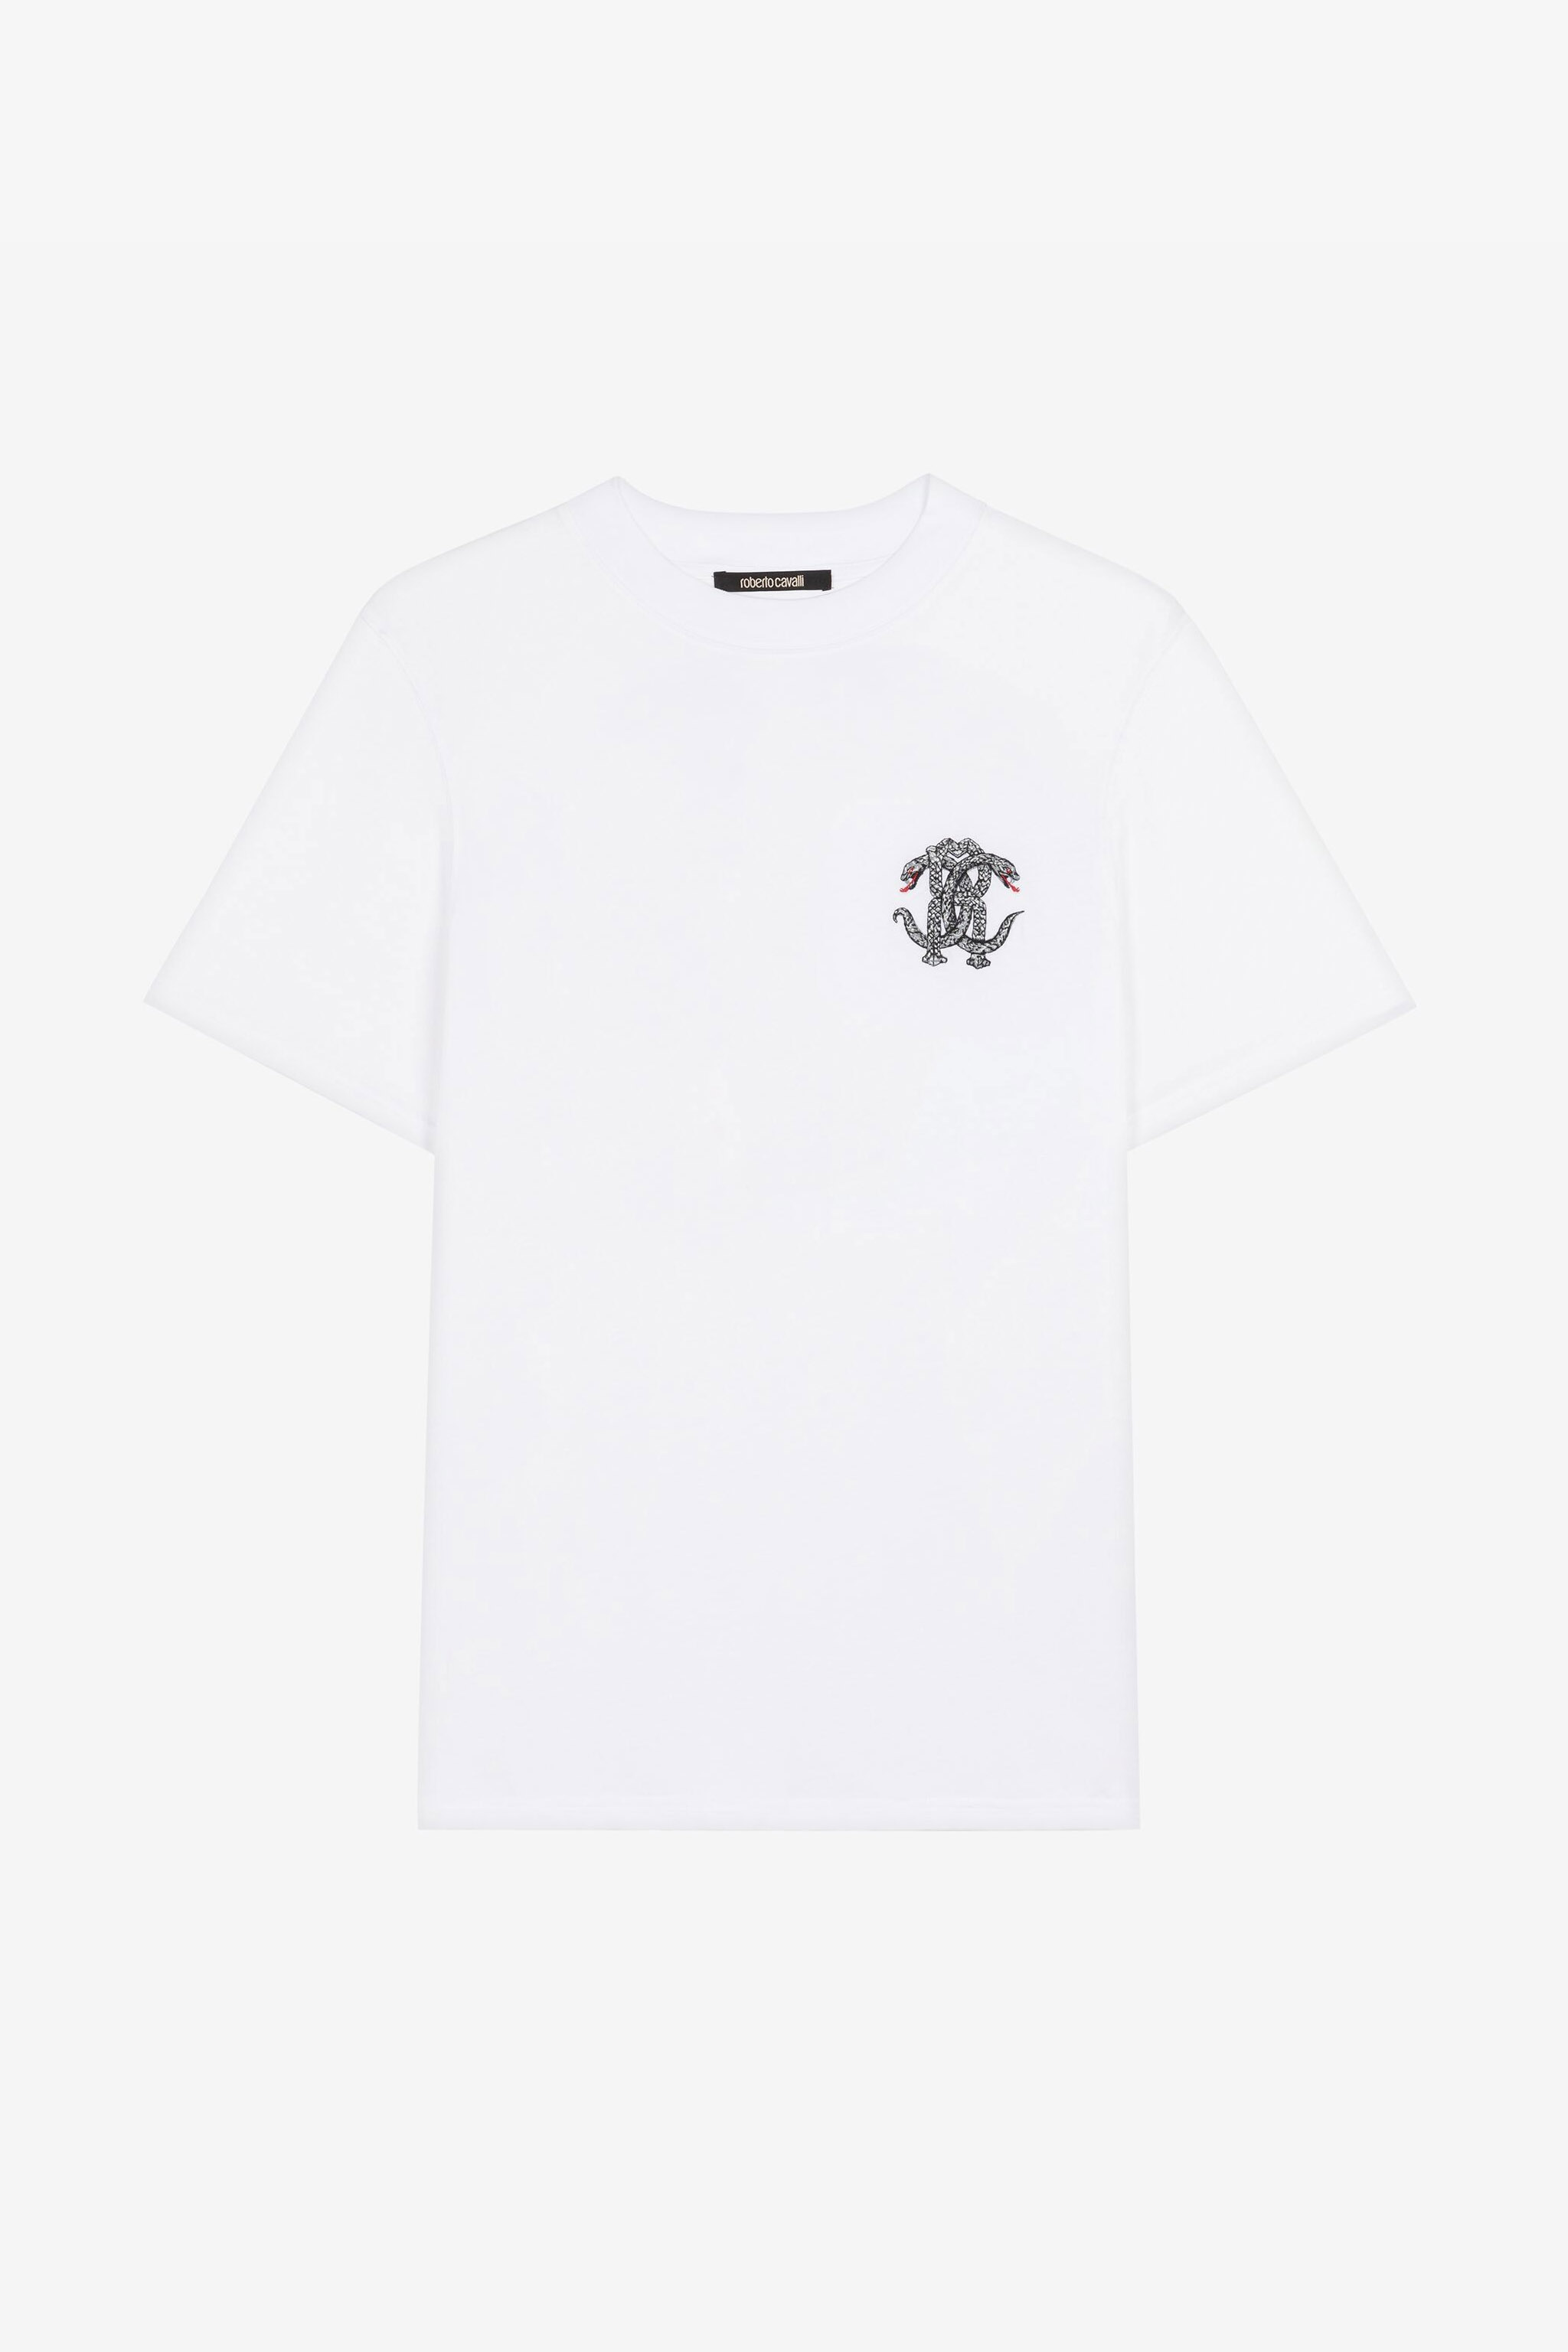 Buy Louis Vuitton logo t shirt Online at desertcartINDIA